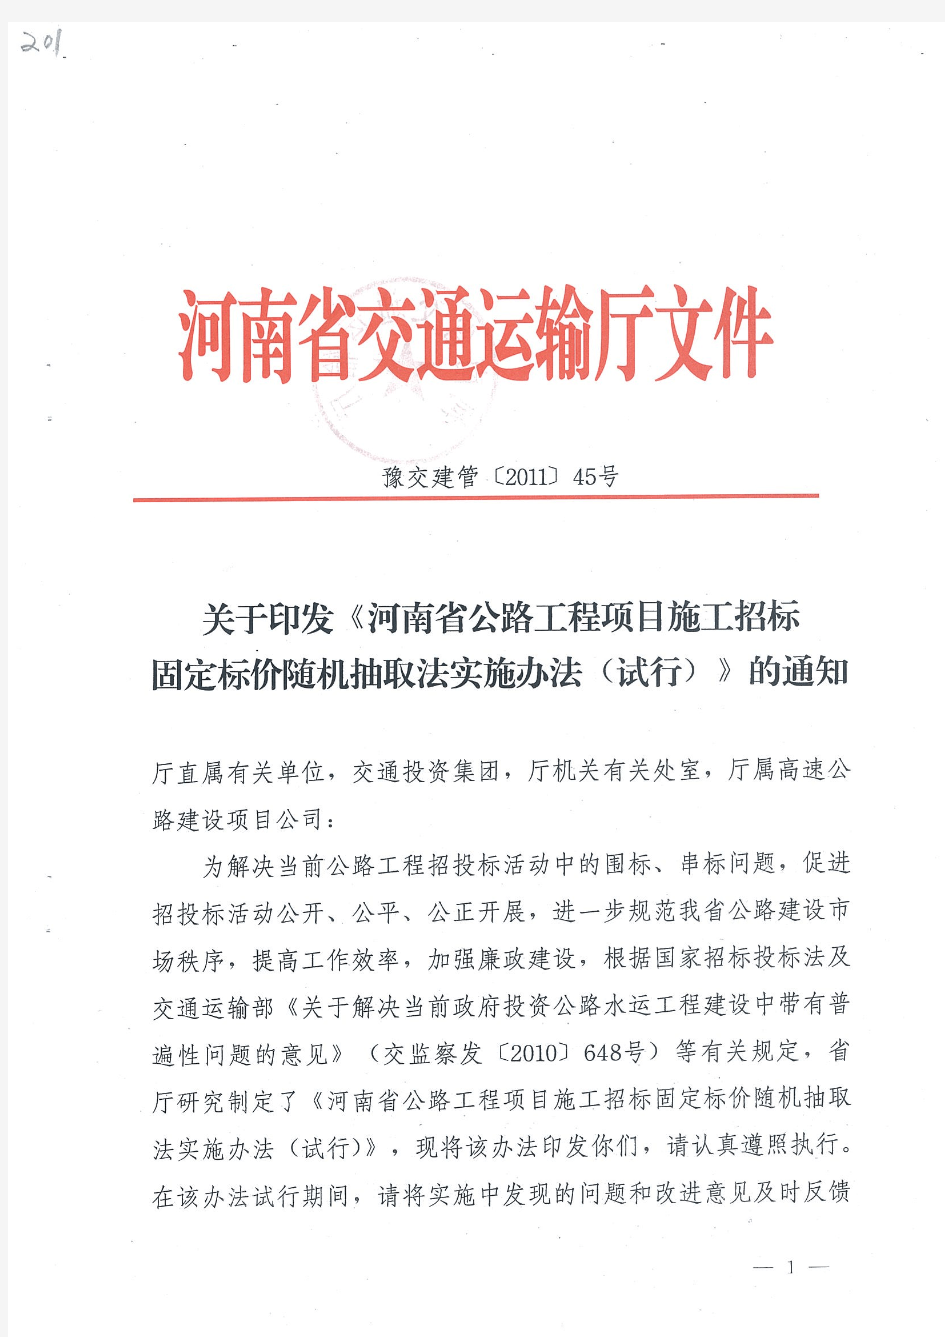 河南省公路工程项目施工招标固定标价随机抽取法实施办法(试行)